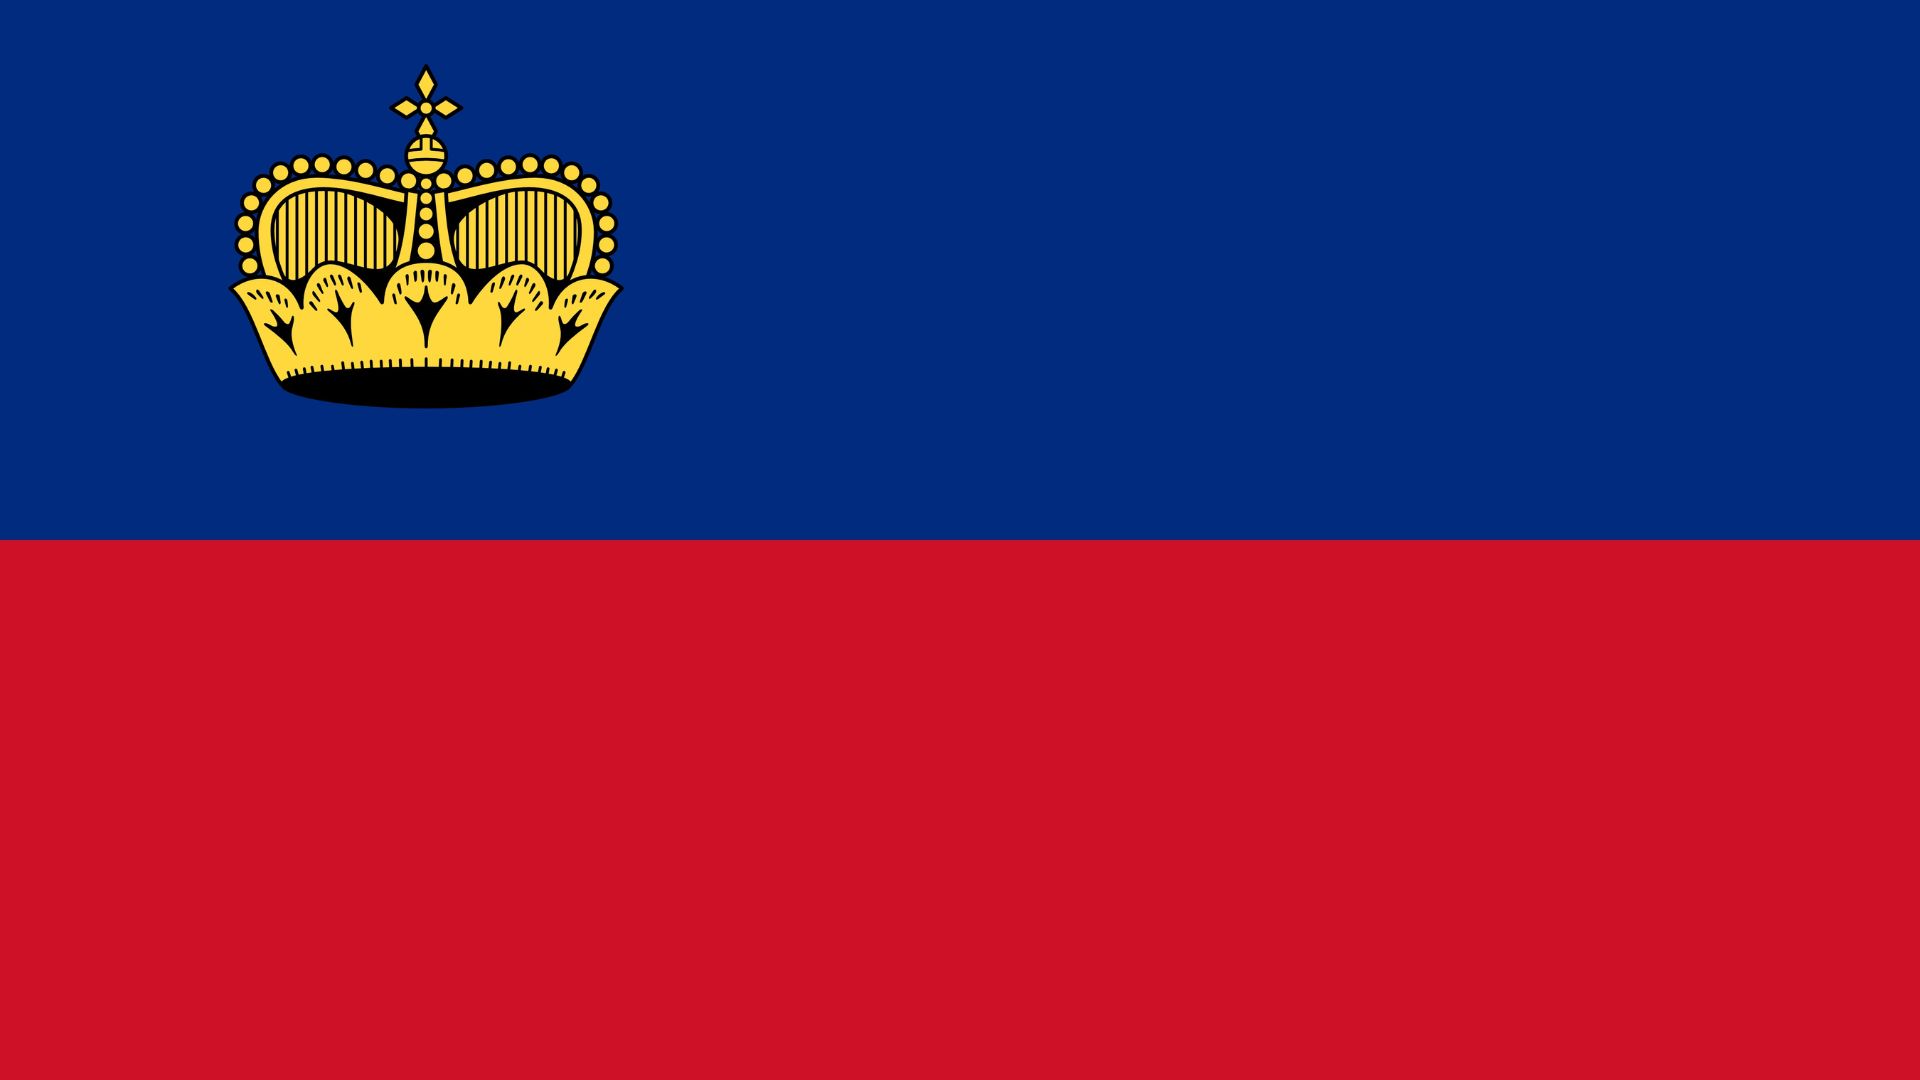 A bandeira de Liechtenstein consiste de dois campos horizontais iguais em azul e vermelho, com uma coroa dourada do lado da tralha do campo azul.